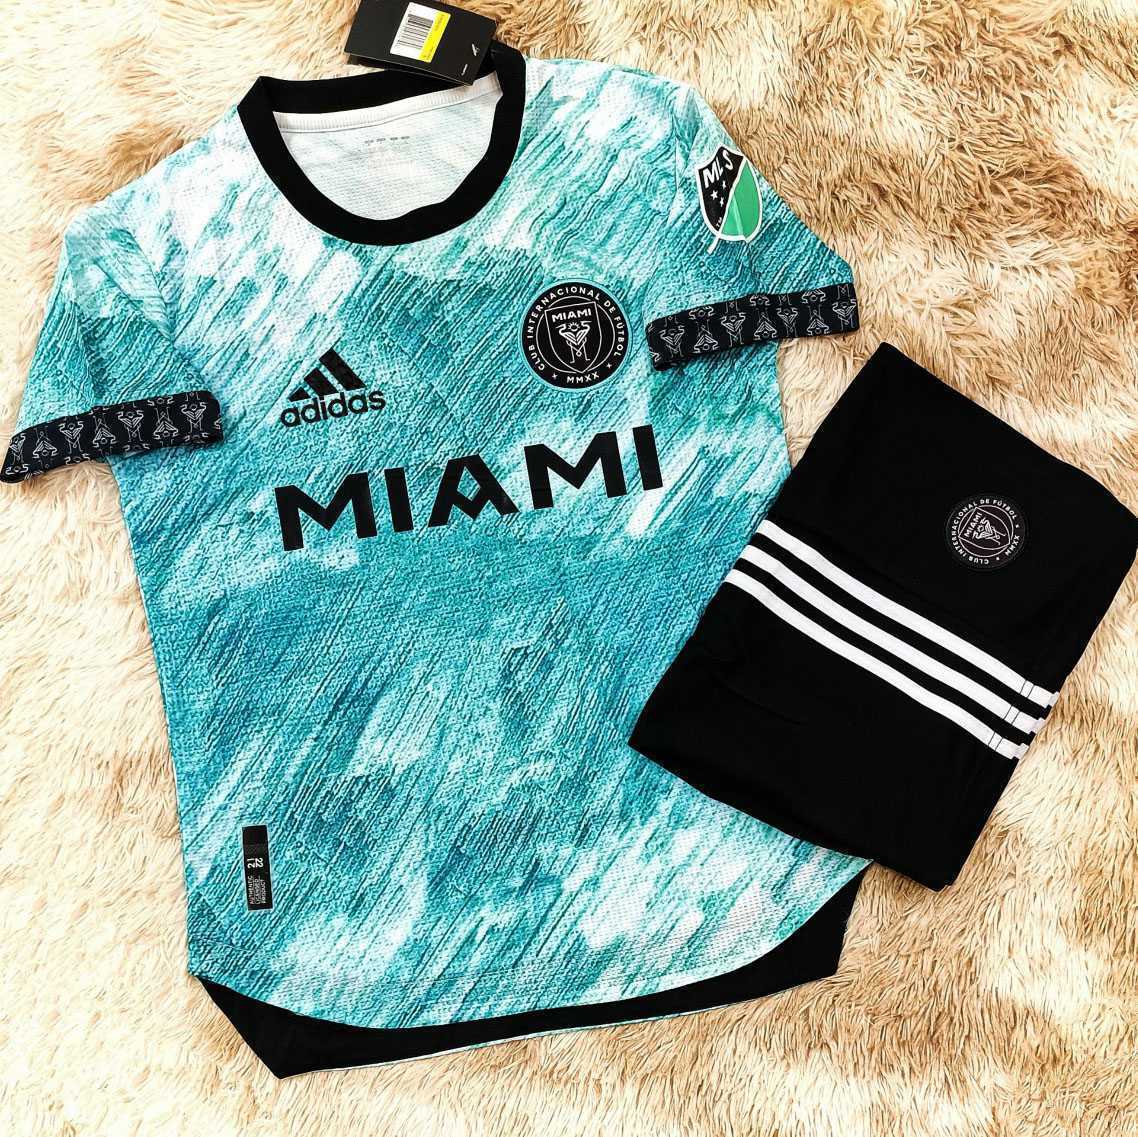 Bộ sưu tập quần áo thể thao bóng đá MIAMI màu hồng xanh ngọc biển vàng đồng đen vải gai thái logo thêu